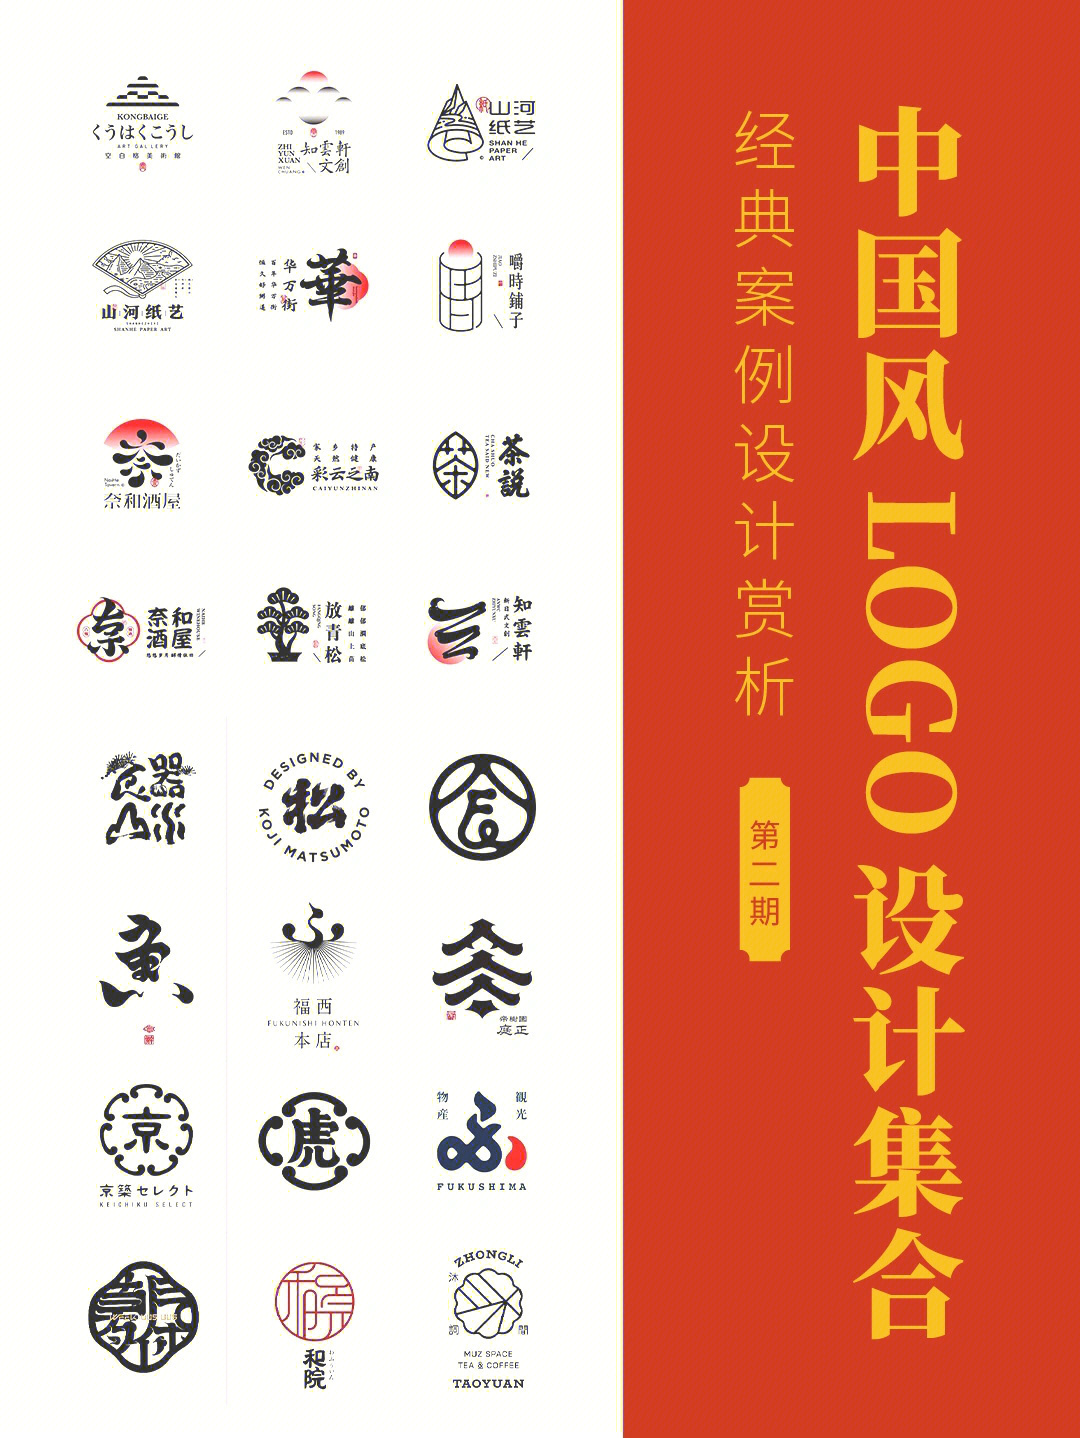 灵感中国风logo设计分享第二期